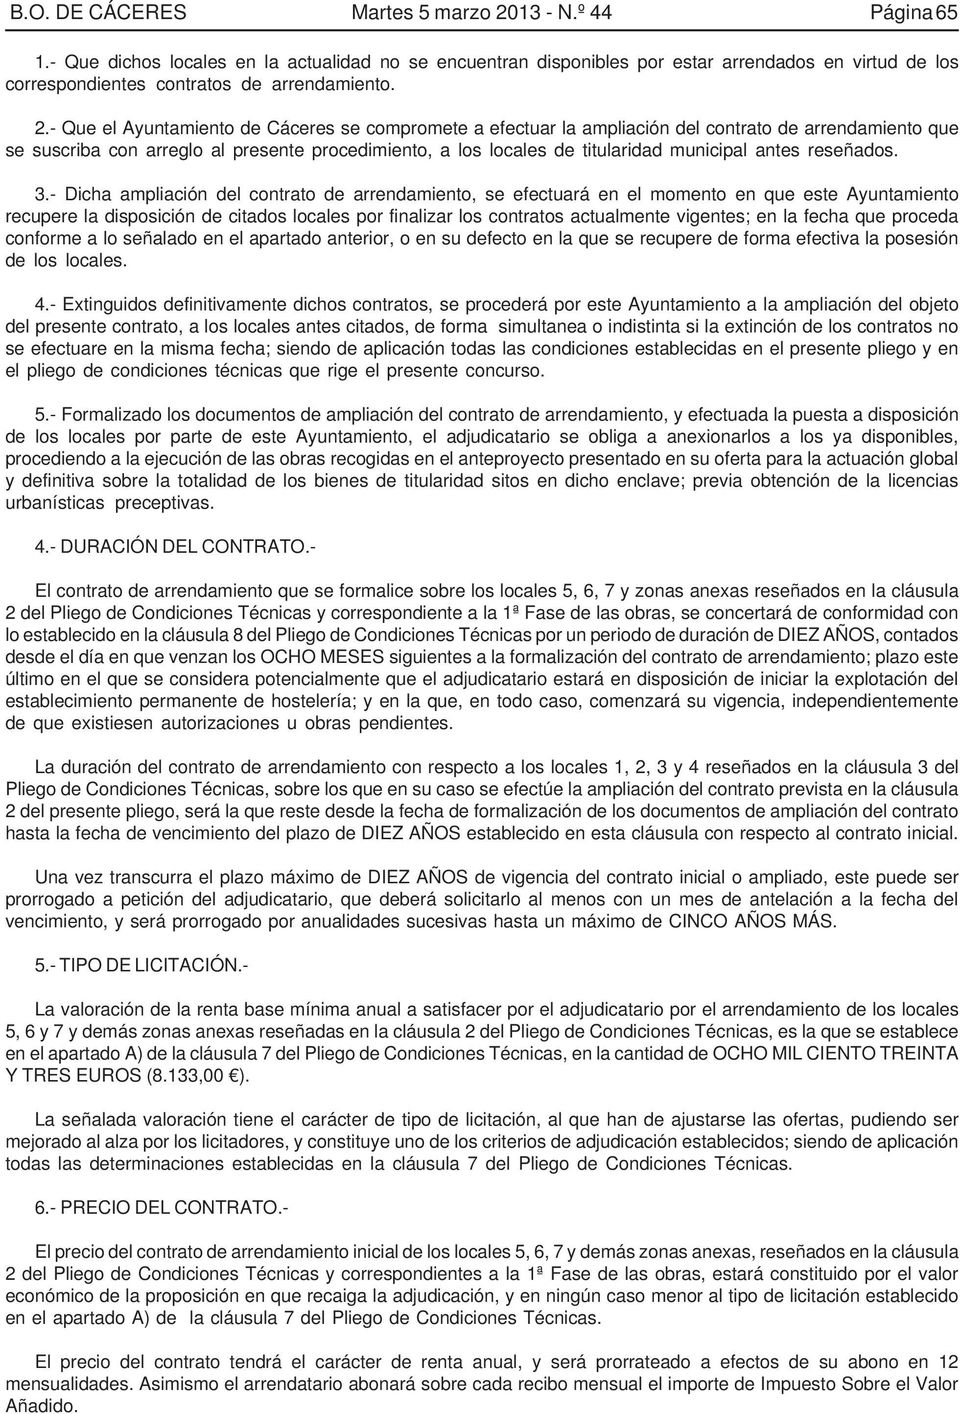 - Que el Ayuntamiento de Cáceres se compromete a efectuar la ampliación del contrato de arrendamiento que se suscriba con arreglo al presente procedimiento, a los locales de titularidad municipal